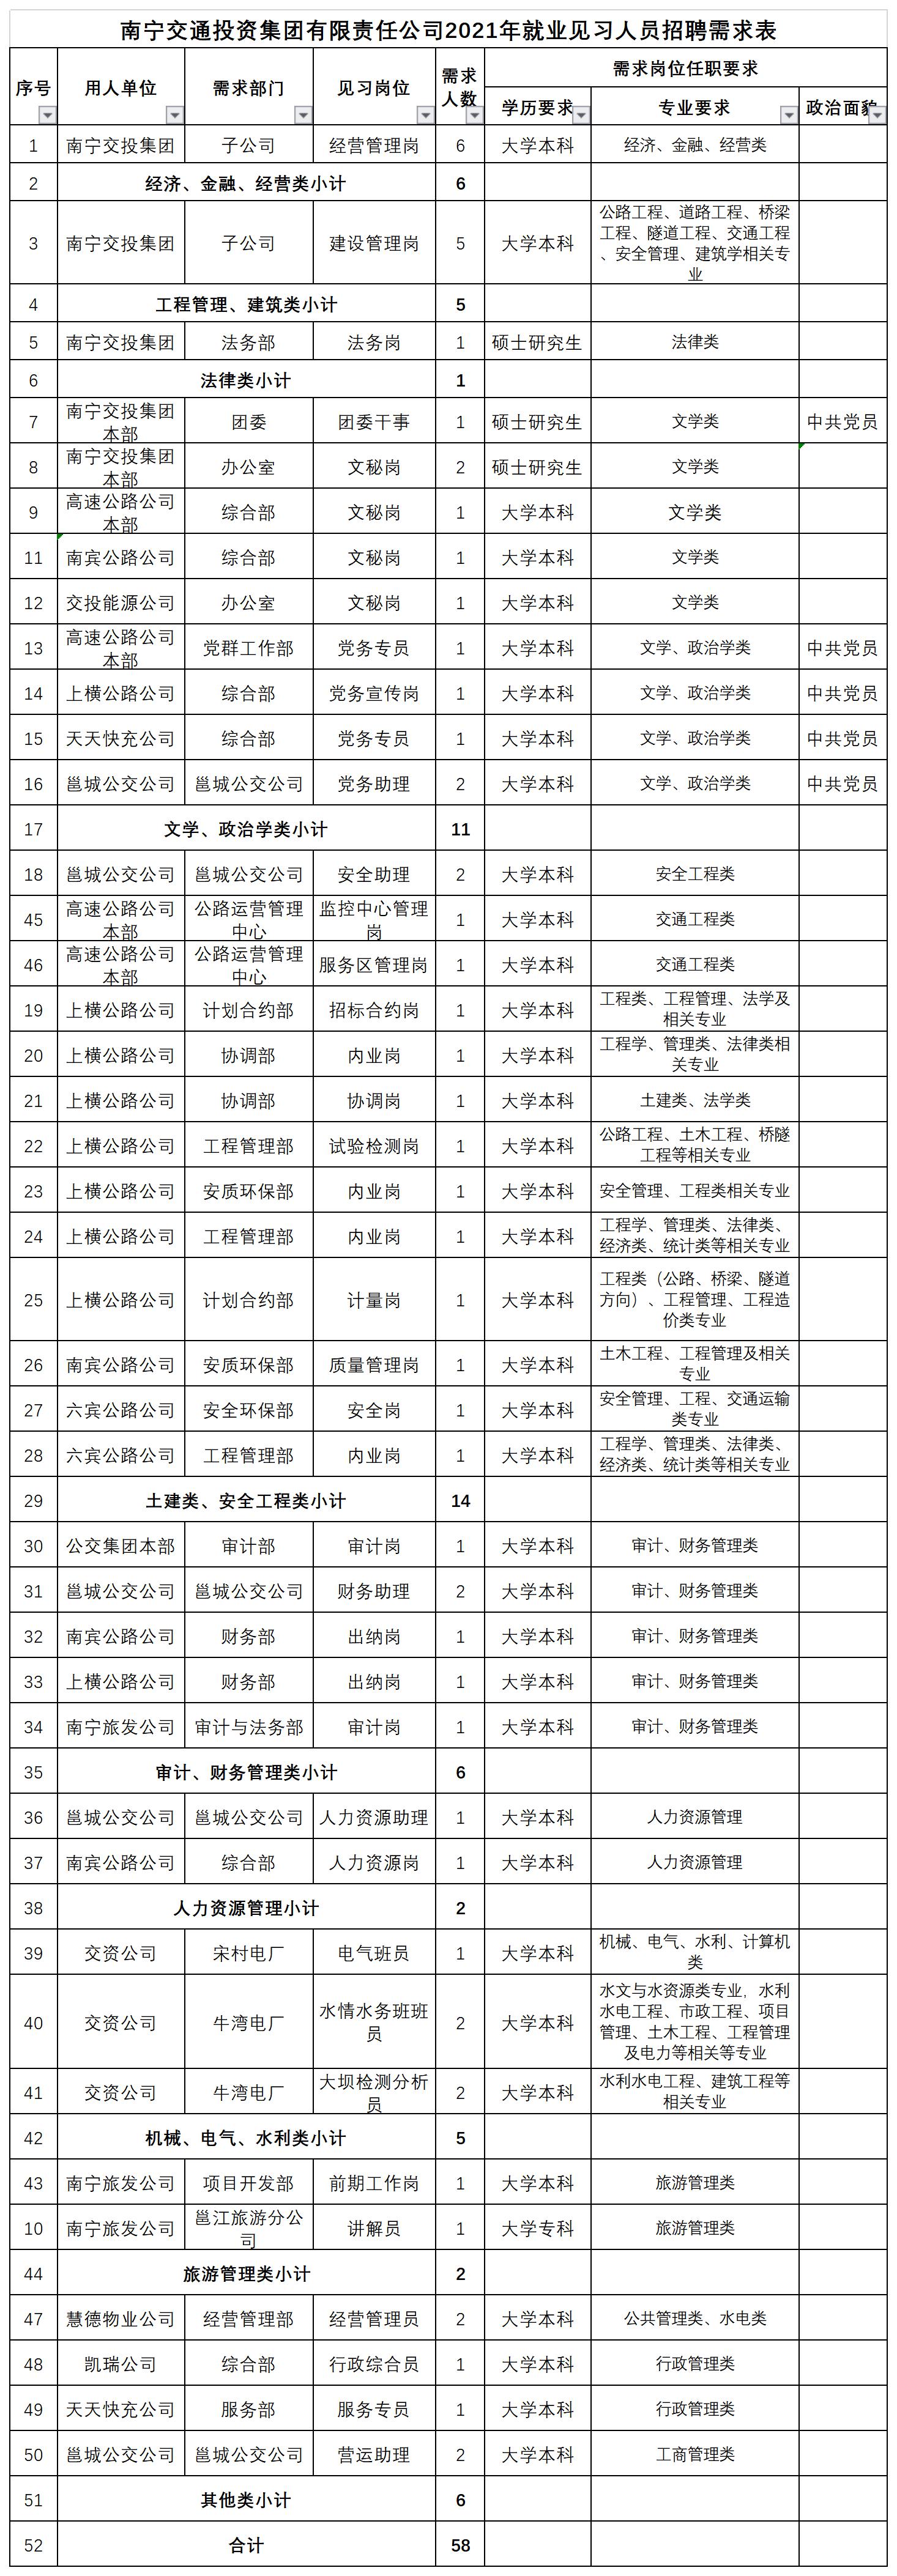 南宁交投集团校园招聘需求岗位2021118(1).jpg